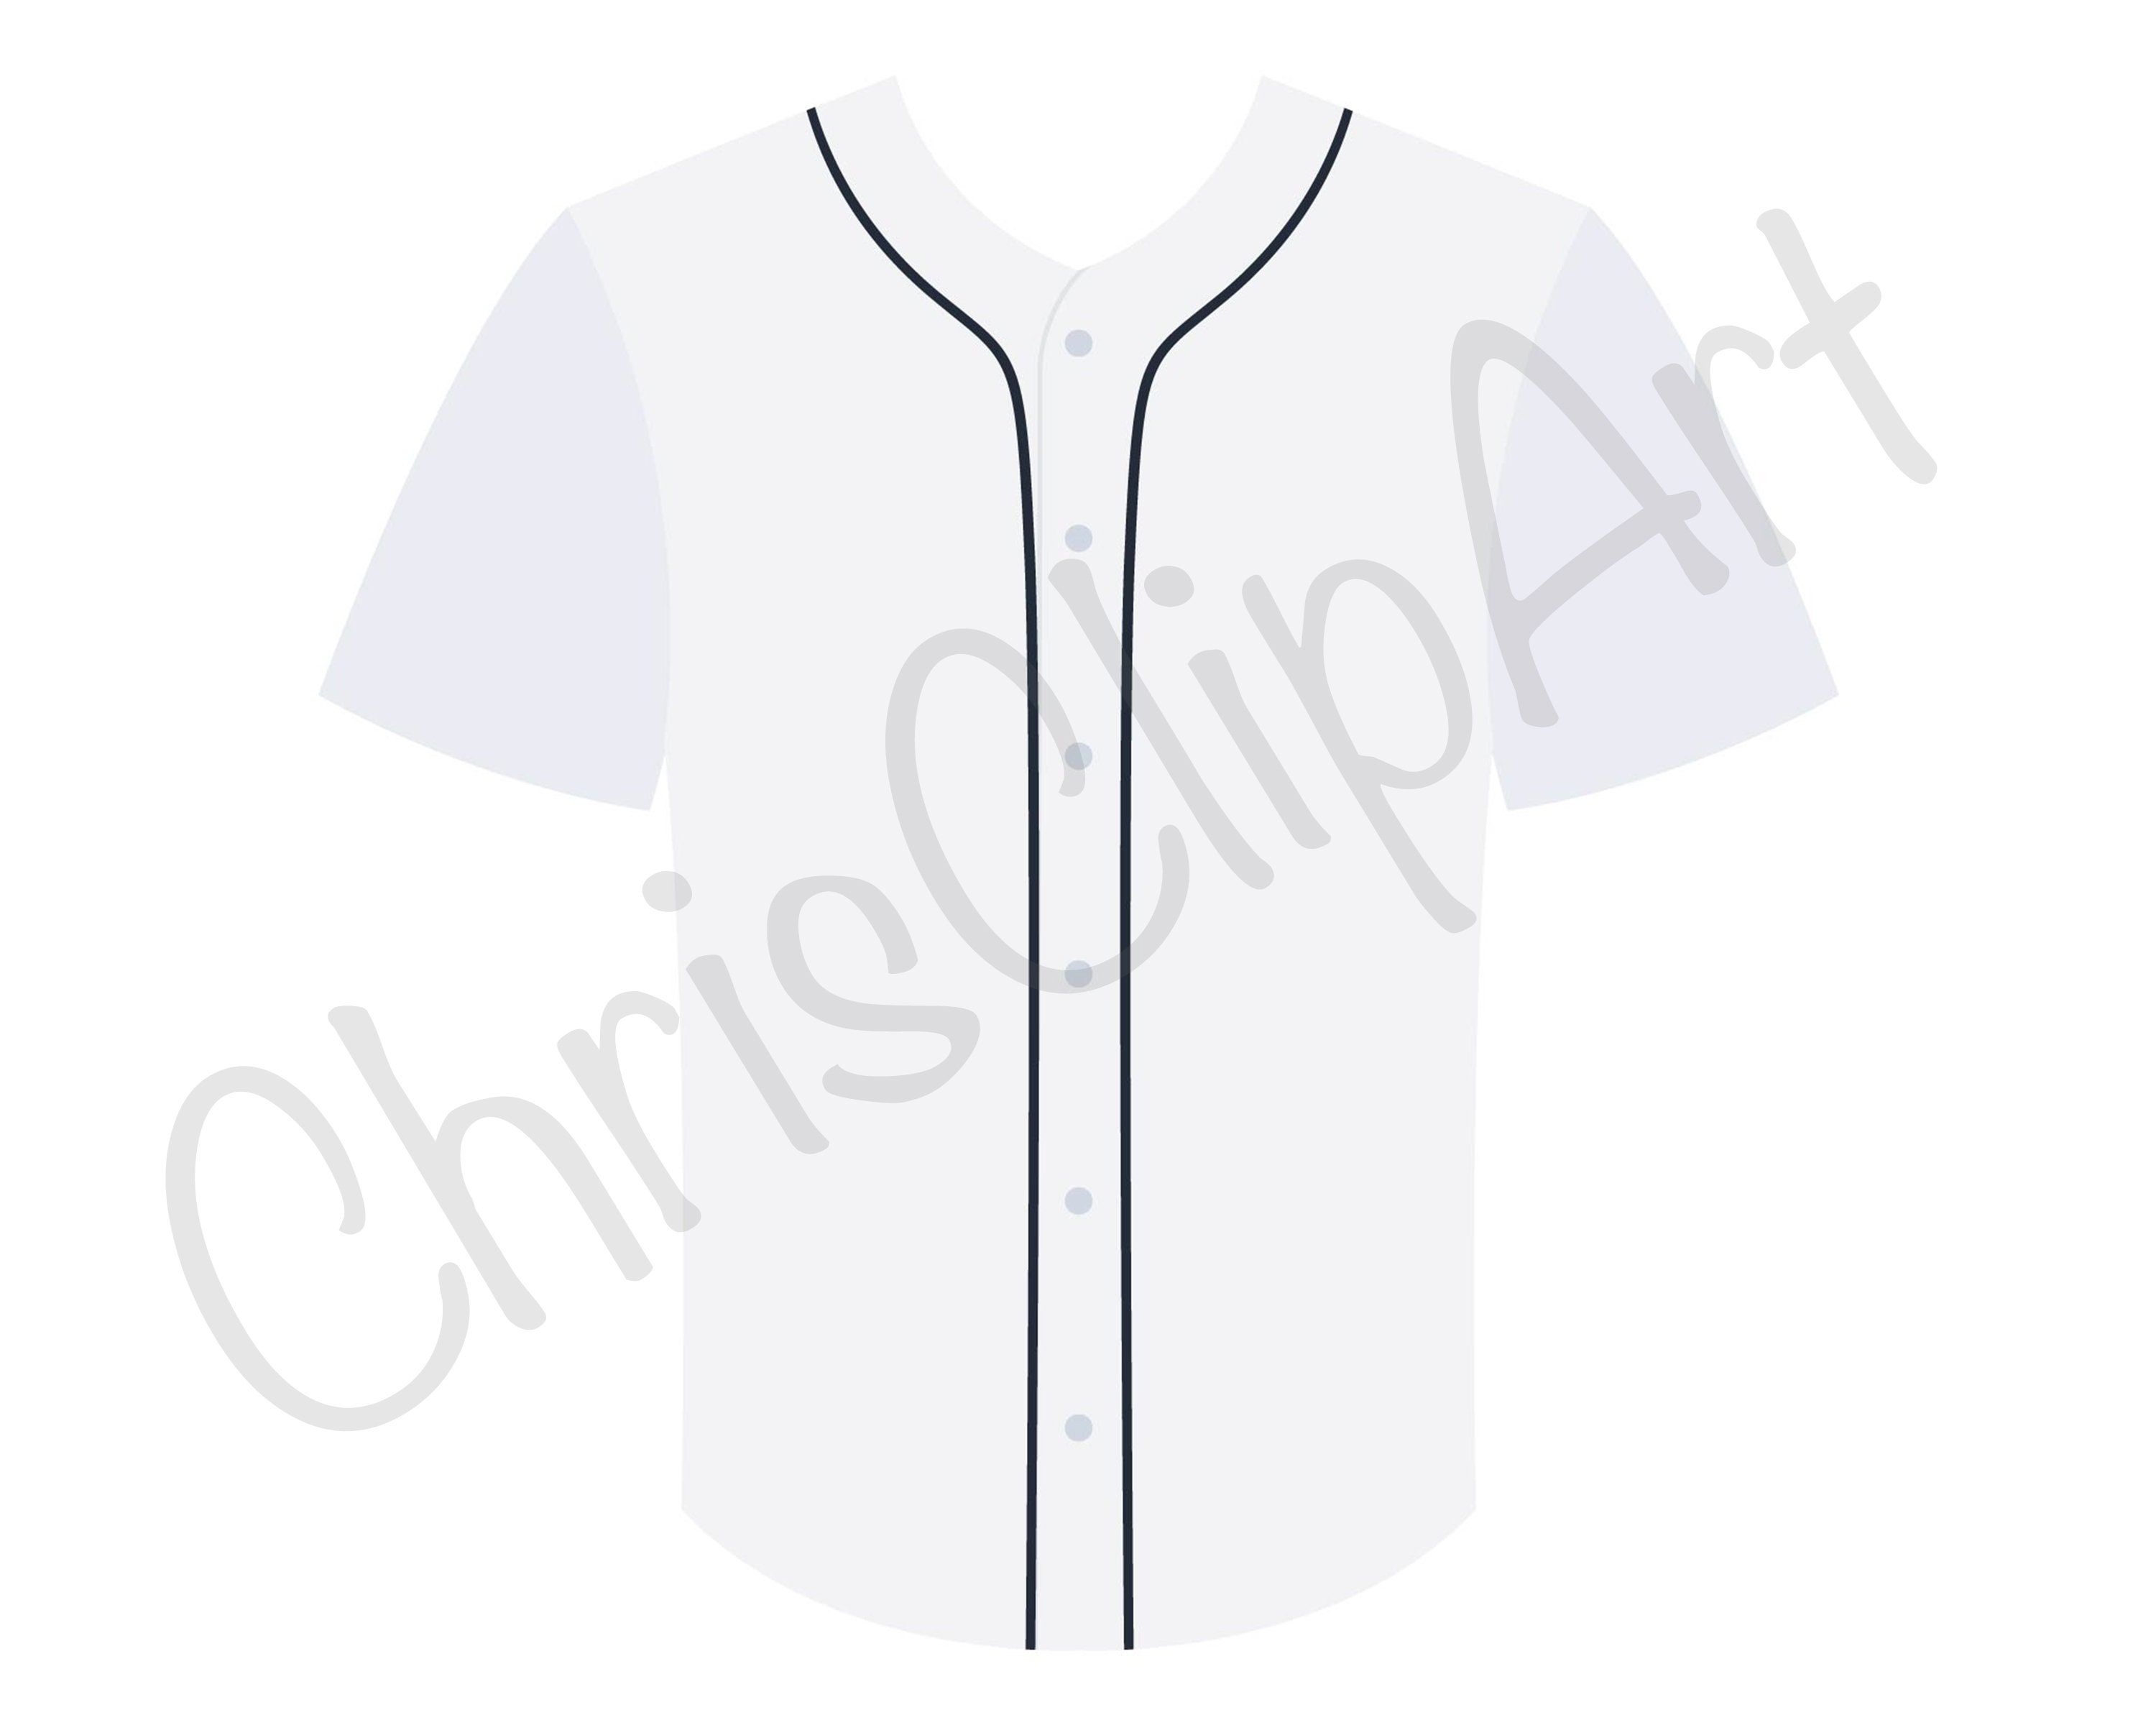 printable baseball jersey template